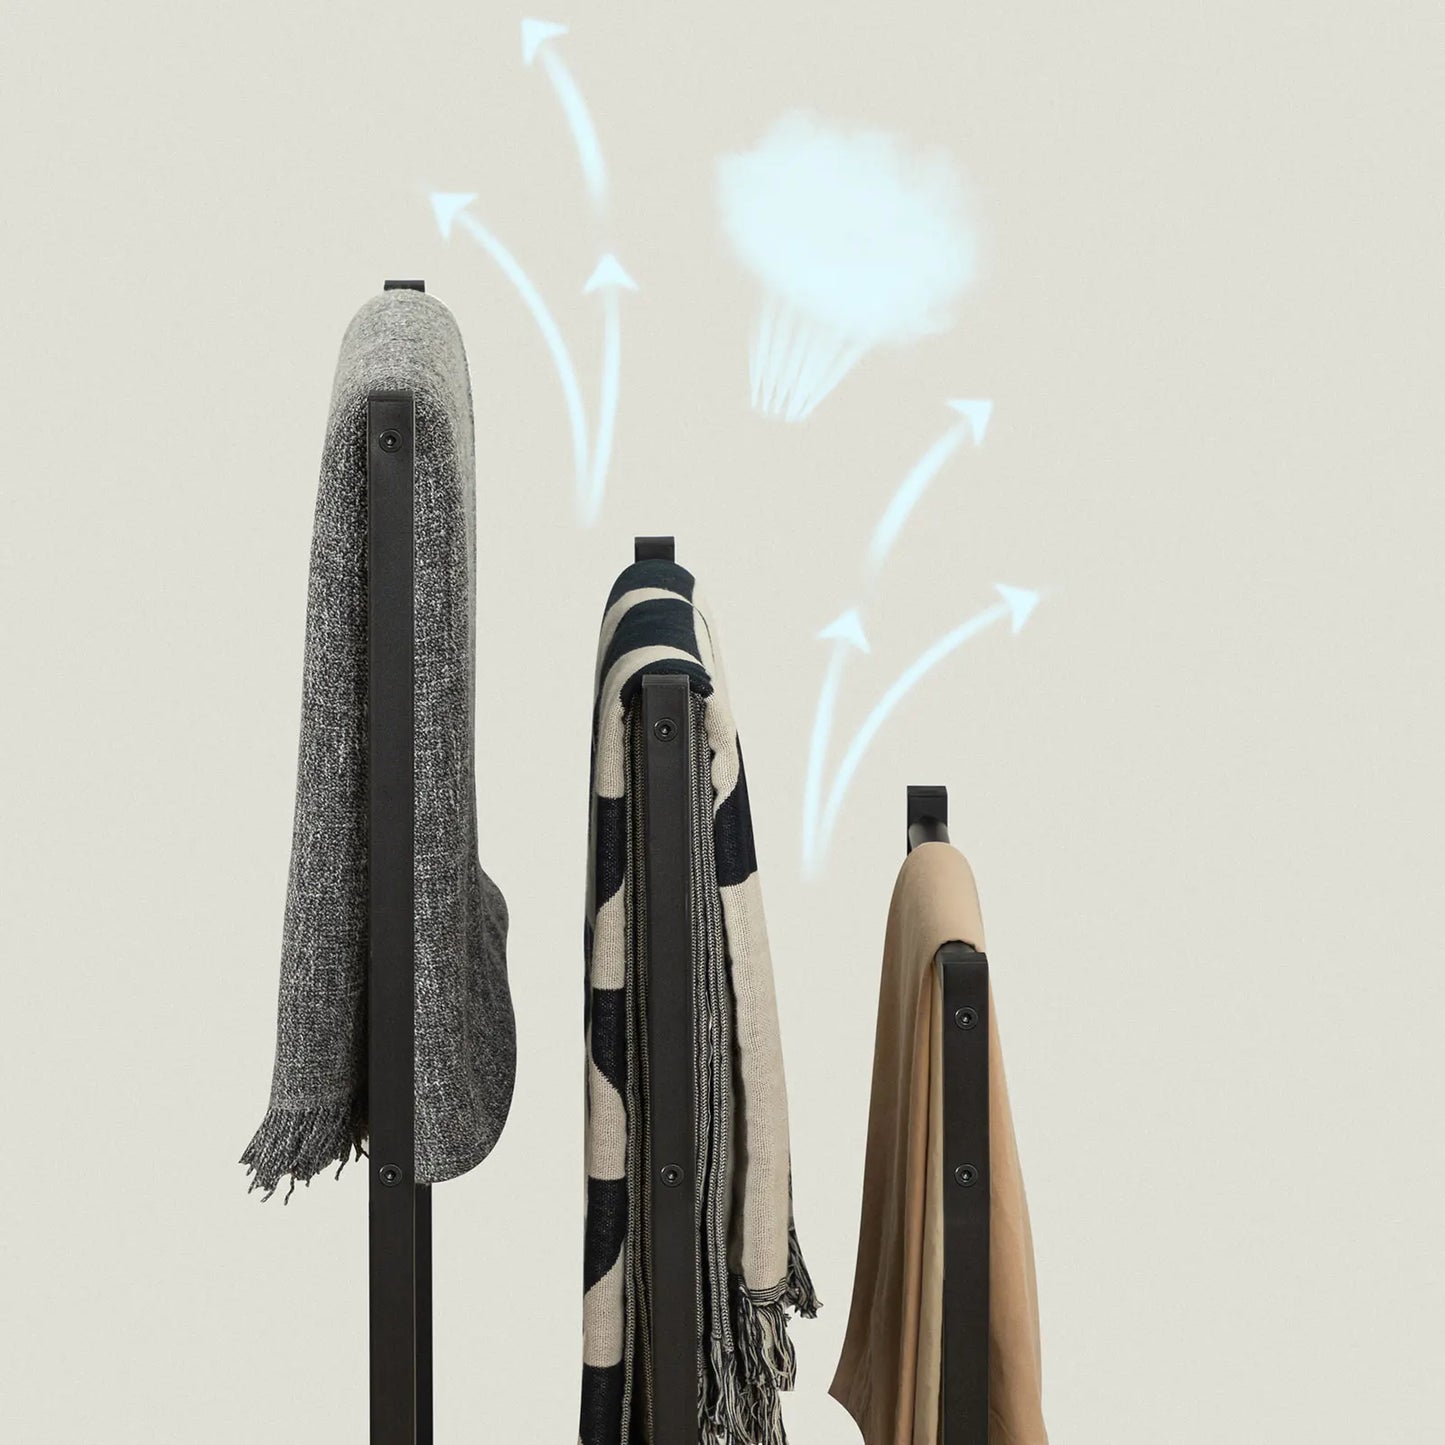 Freistehender Handtuchhalter mit 3 Handtuchstangen und Ablagefach, im schlichten Design für Badezimmer, in Rustikalem Braun und Schwarz - Unique Outlet